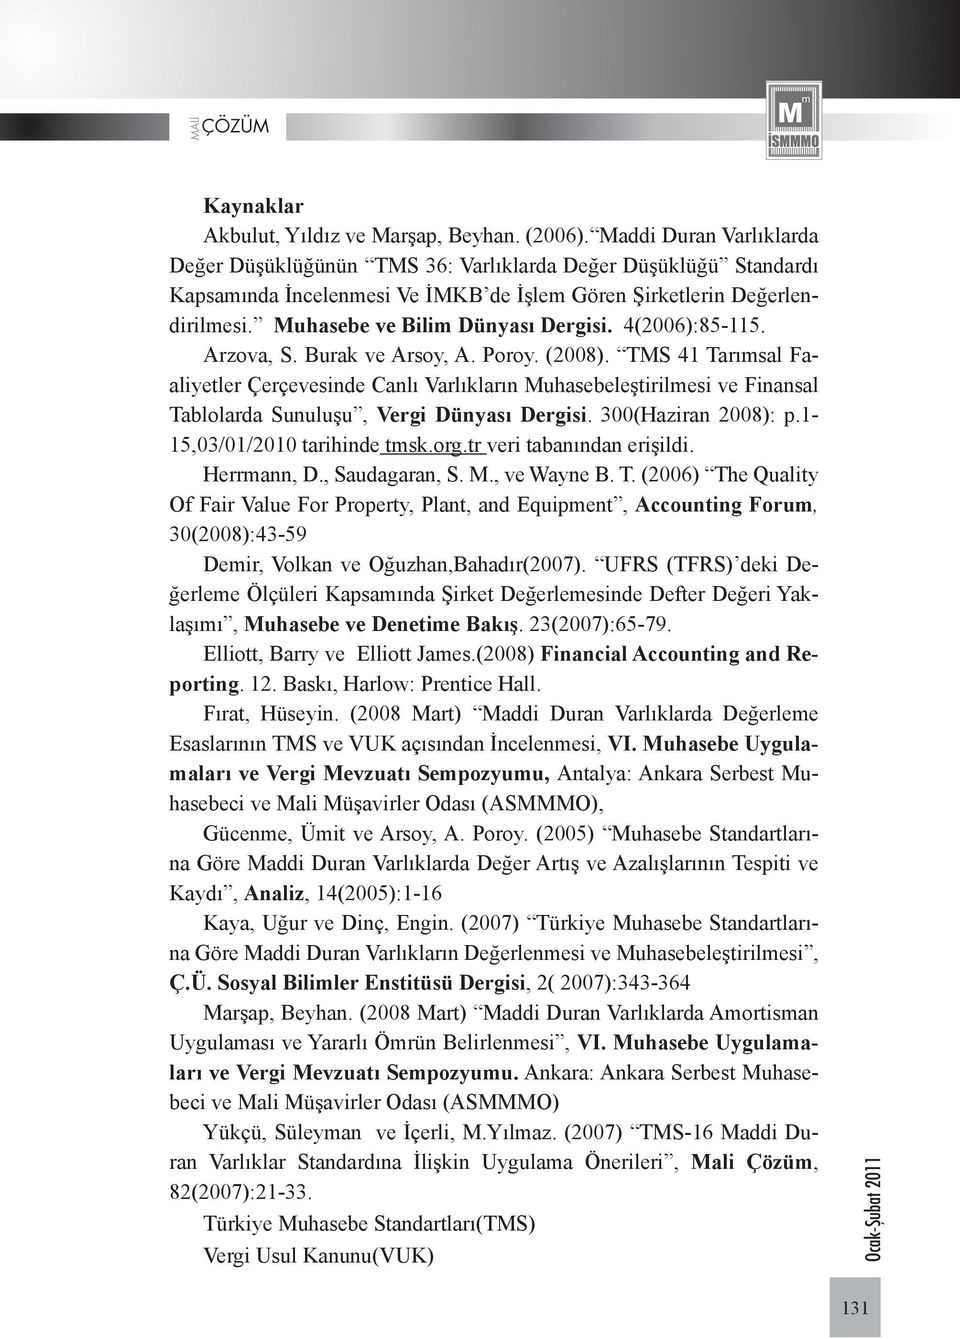 4(2006):85-115. Arzova, S. Burak ve Arsoy, A. Poroy. (2008). TMS 41 Tarımsal Faaliyetler Çerçevesinde Canlı Varlıkların Muhasebeleştirilmesi ve Finansal Tablolarda Sunuluşu, Vergi Dünyası Dergisi.